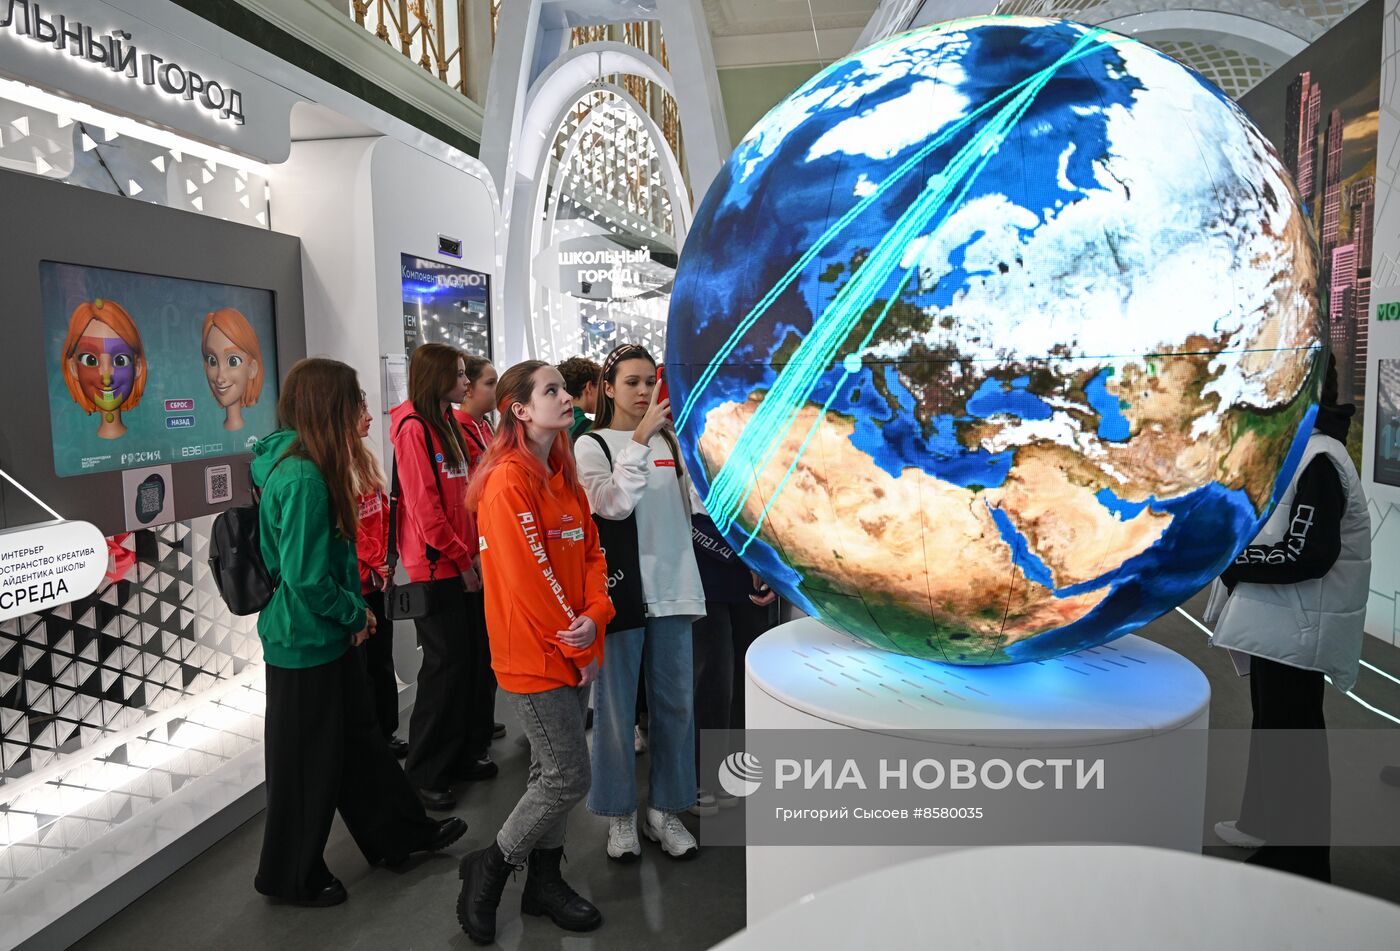 Выставка "Россия". Открытие павильона №59 "Города для жизни сбываются" 